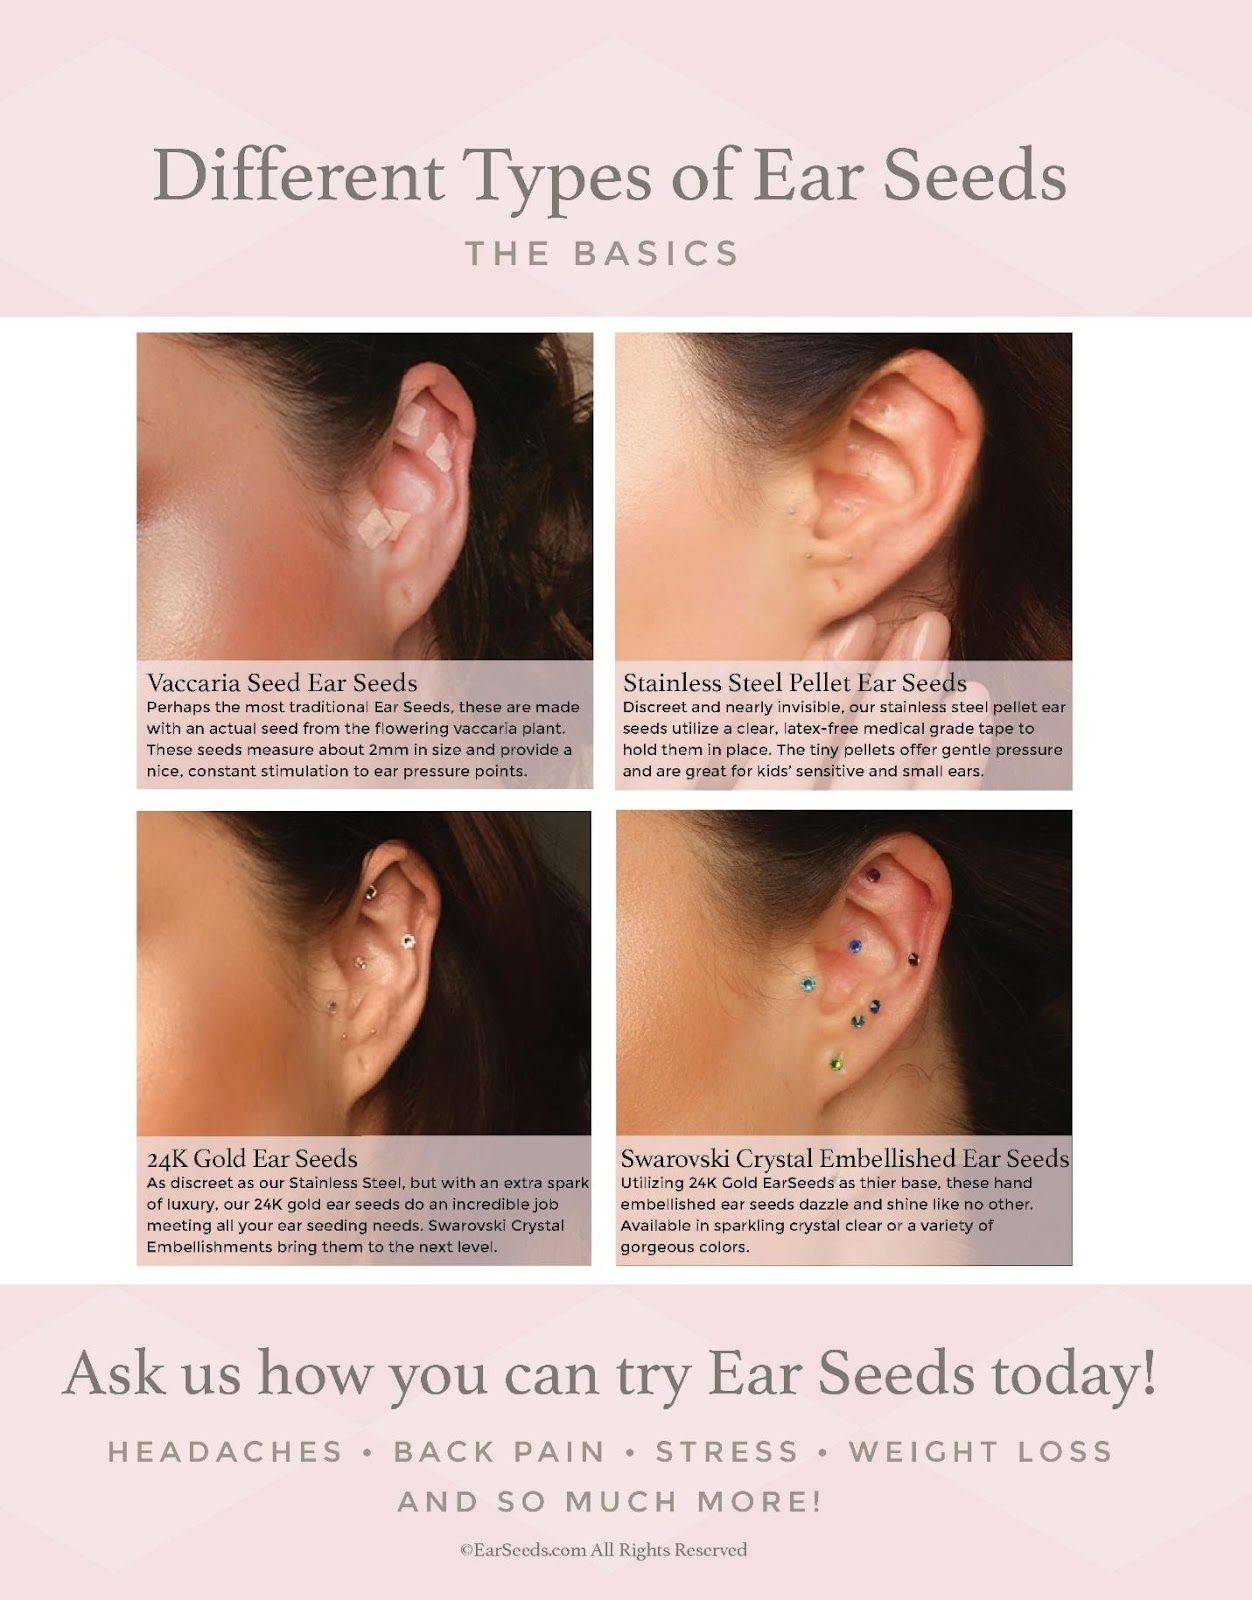 Ear Seeds Acupressure - The Basics